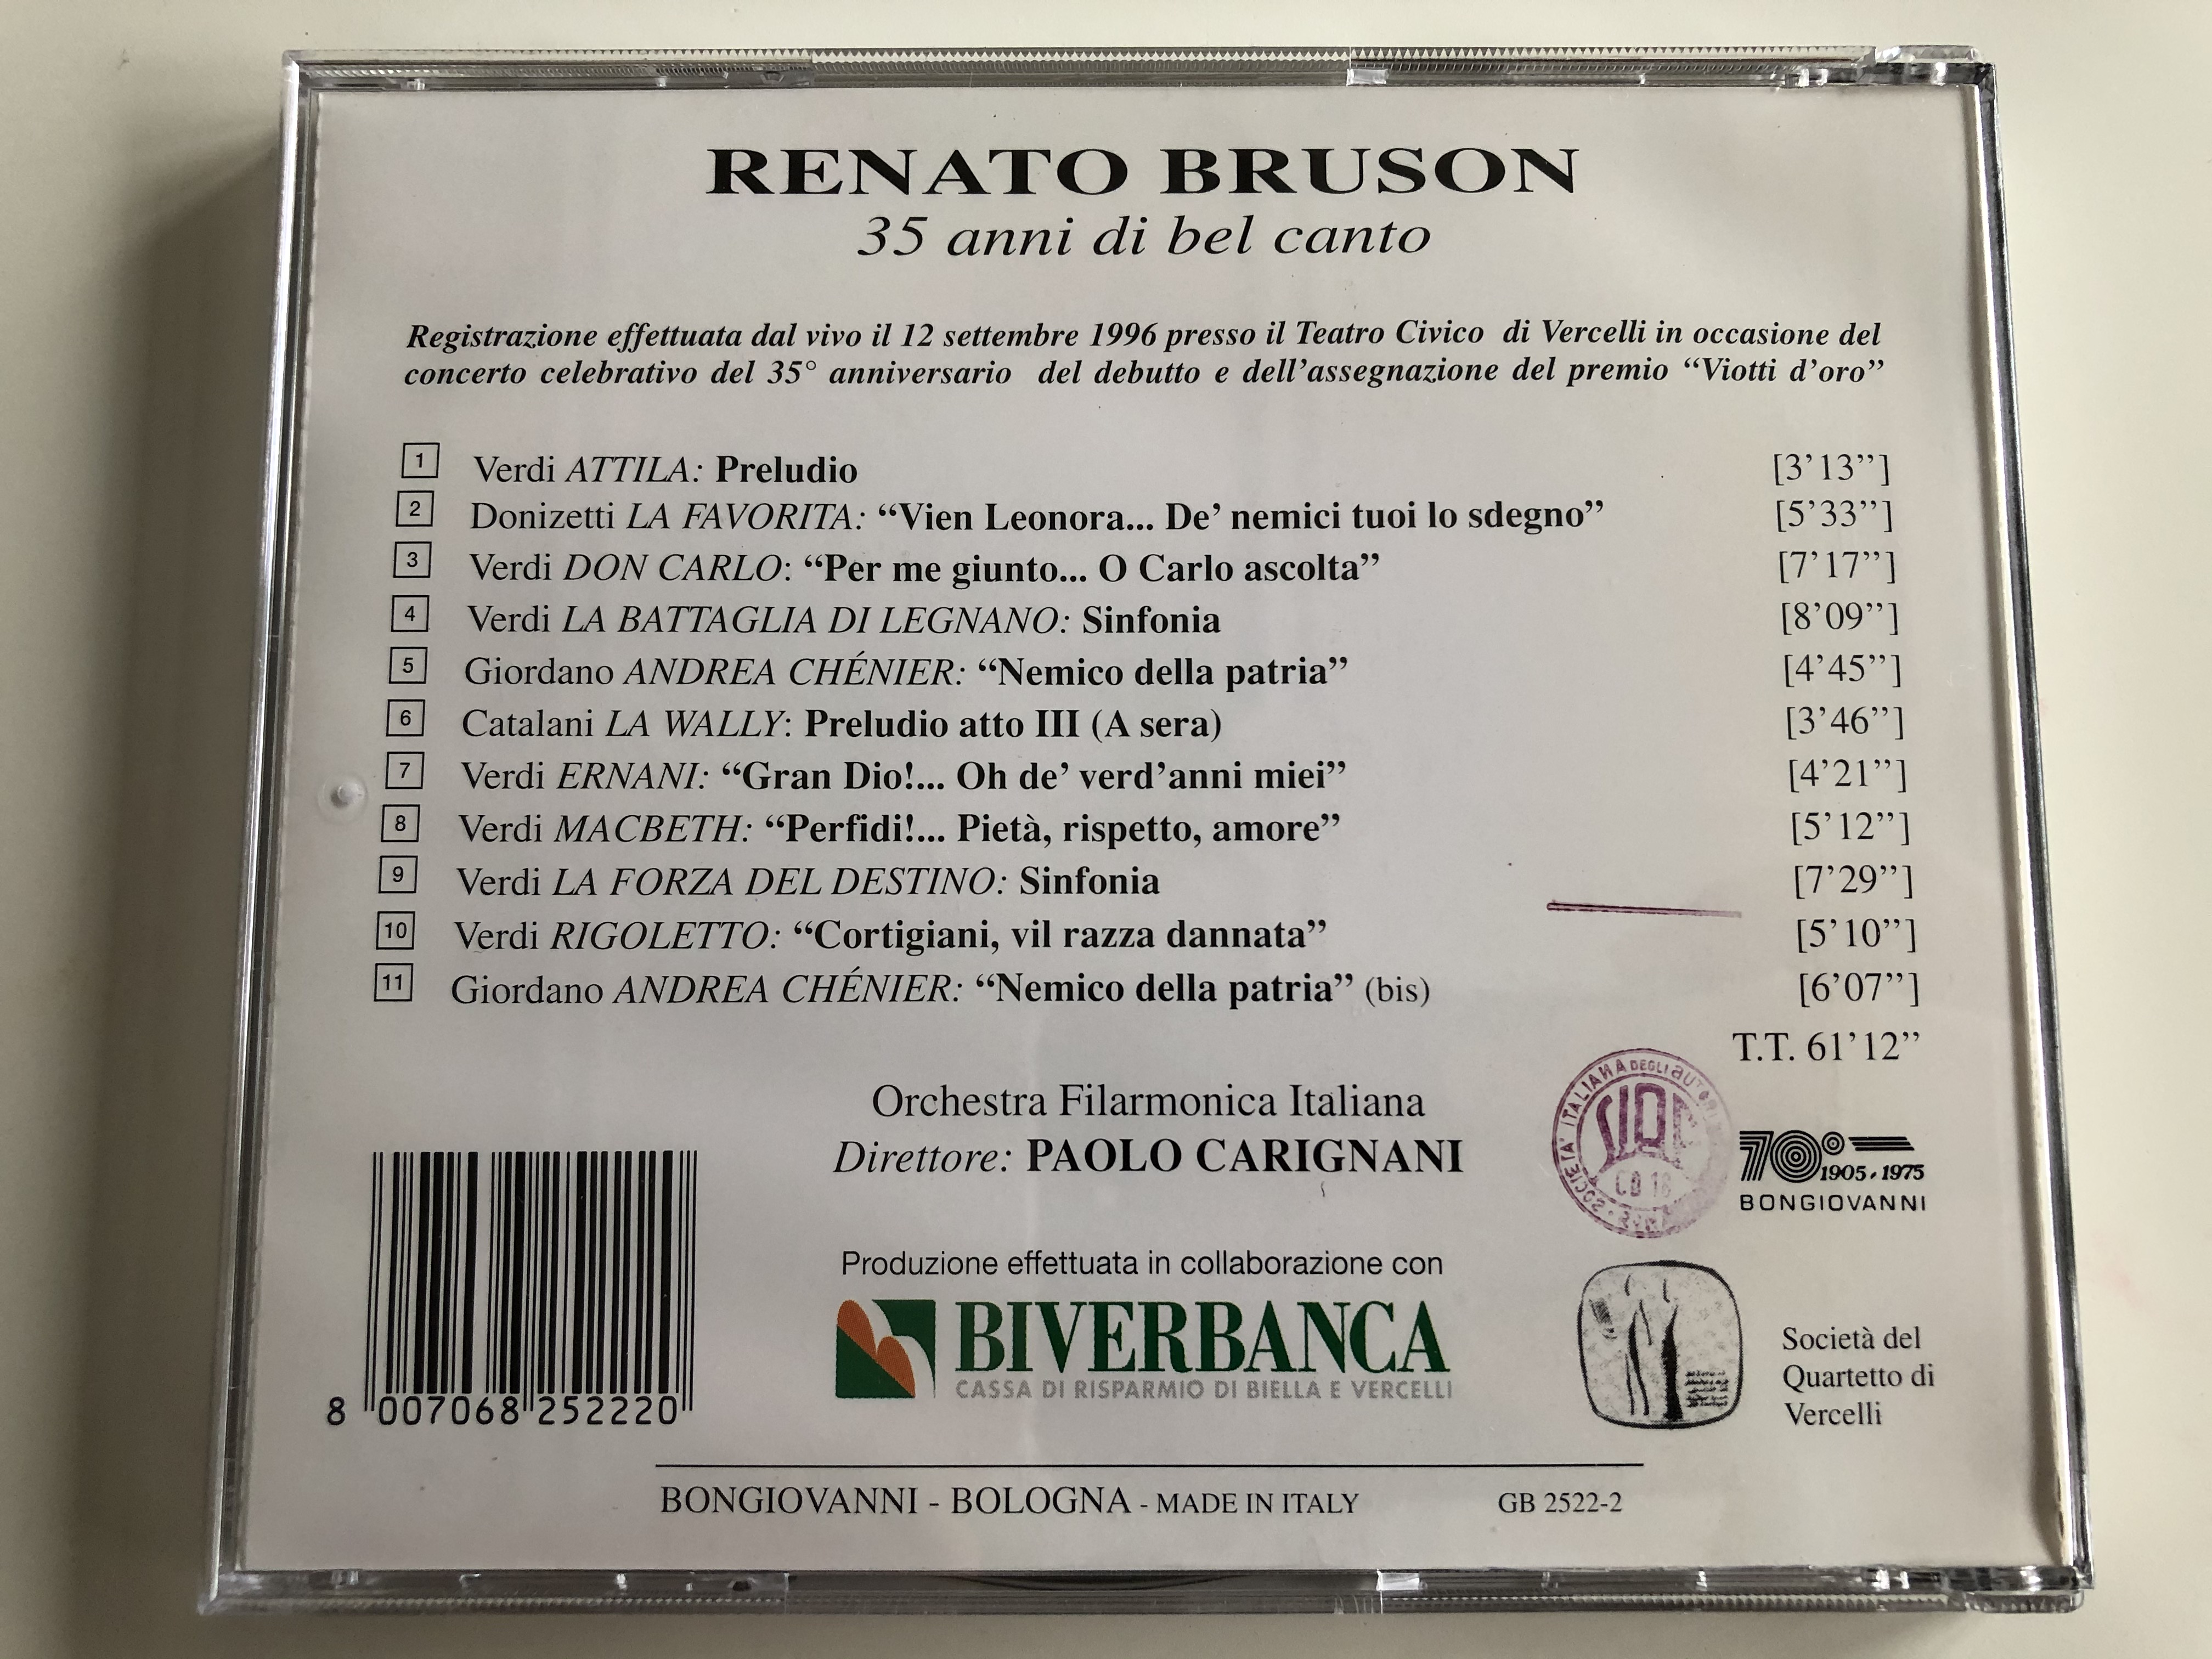 renato-bruson-35-anni-di-bel-canto-orchestra-filarmonica-italiana-paolo-carignani-bongiovanni-audio-cd-gb-2522-2-9-.jpg